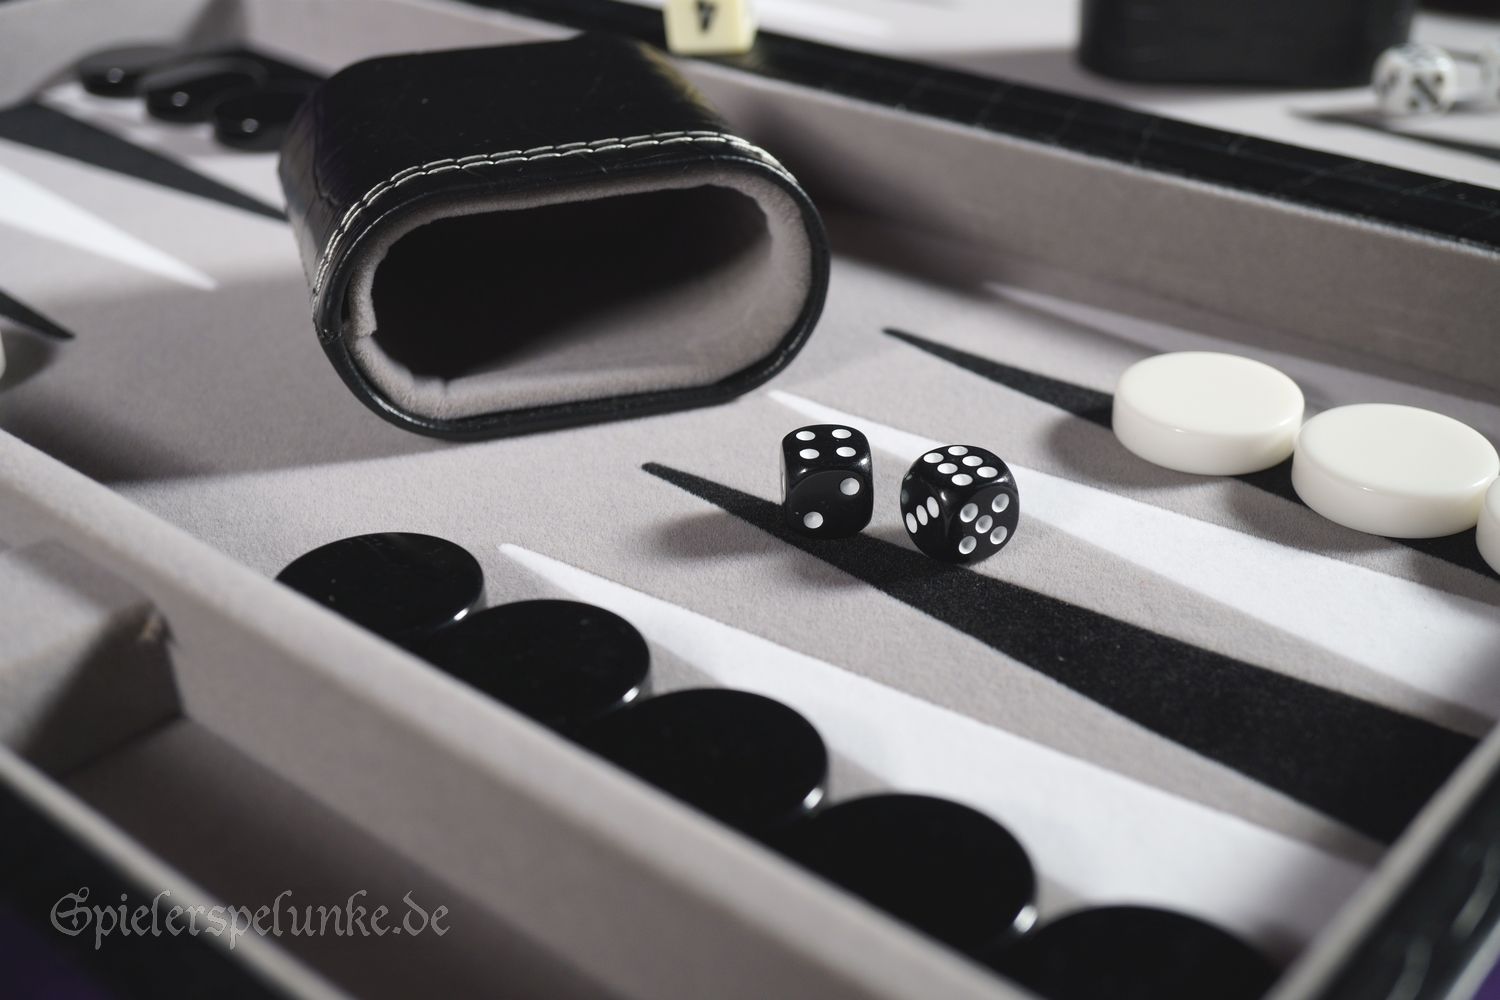 Pygmalion prioriteit Leeg de prullenbak spielerspelunke an der Leuchtenburg - Backgammon Spielekoffer aus Kunstleder  schwarz mit Krokostruktur